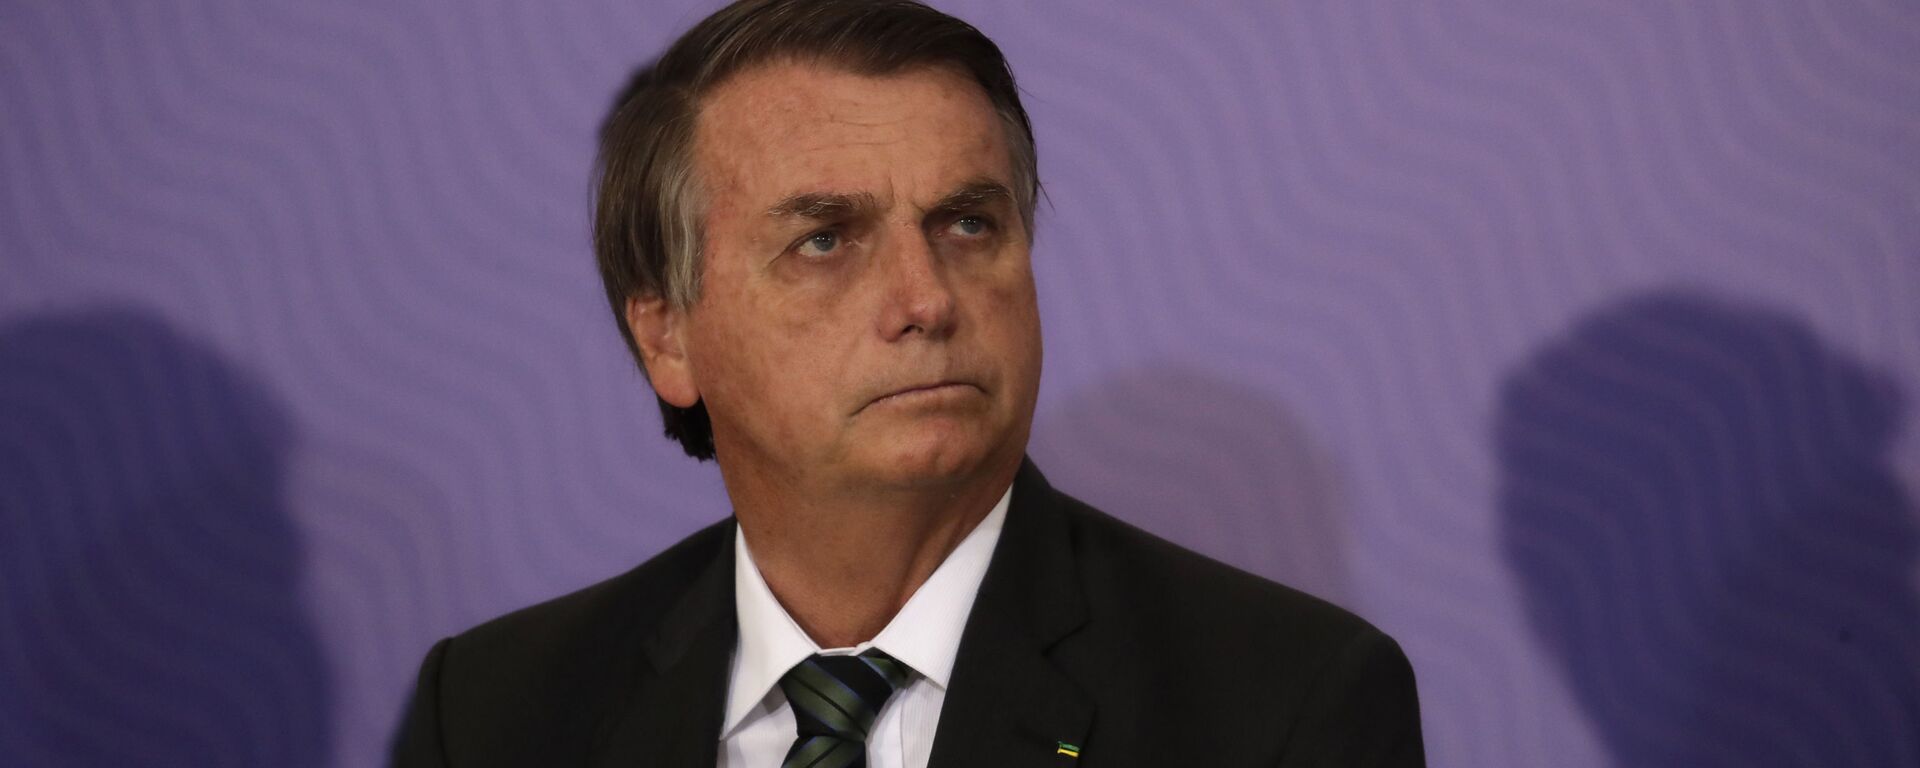 El presidente de Brasil, Jair Bolsonaro - Sputnik Mundo, 1920, 06.05.2021